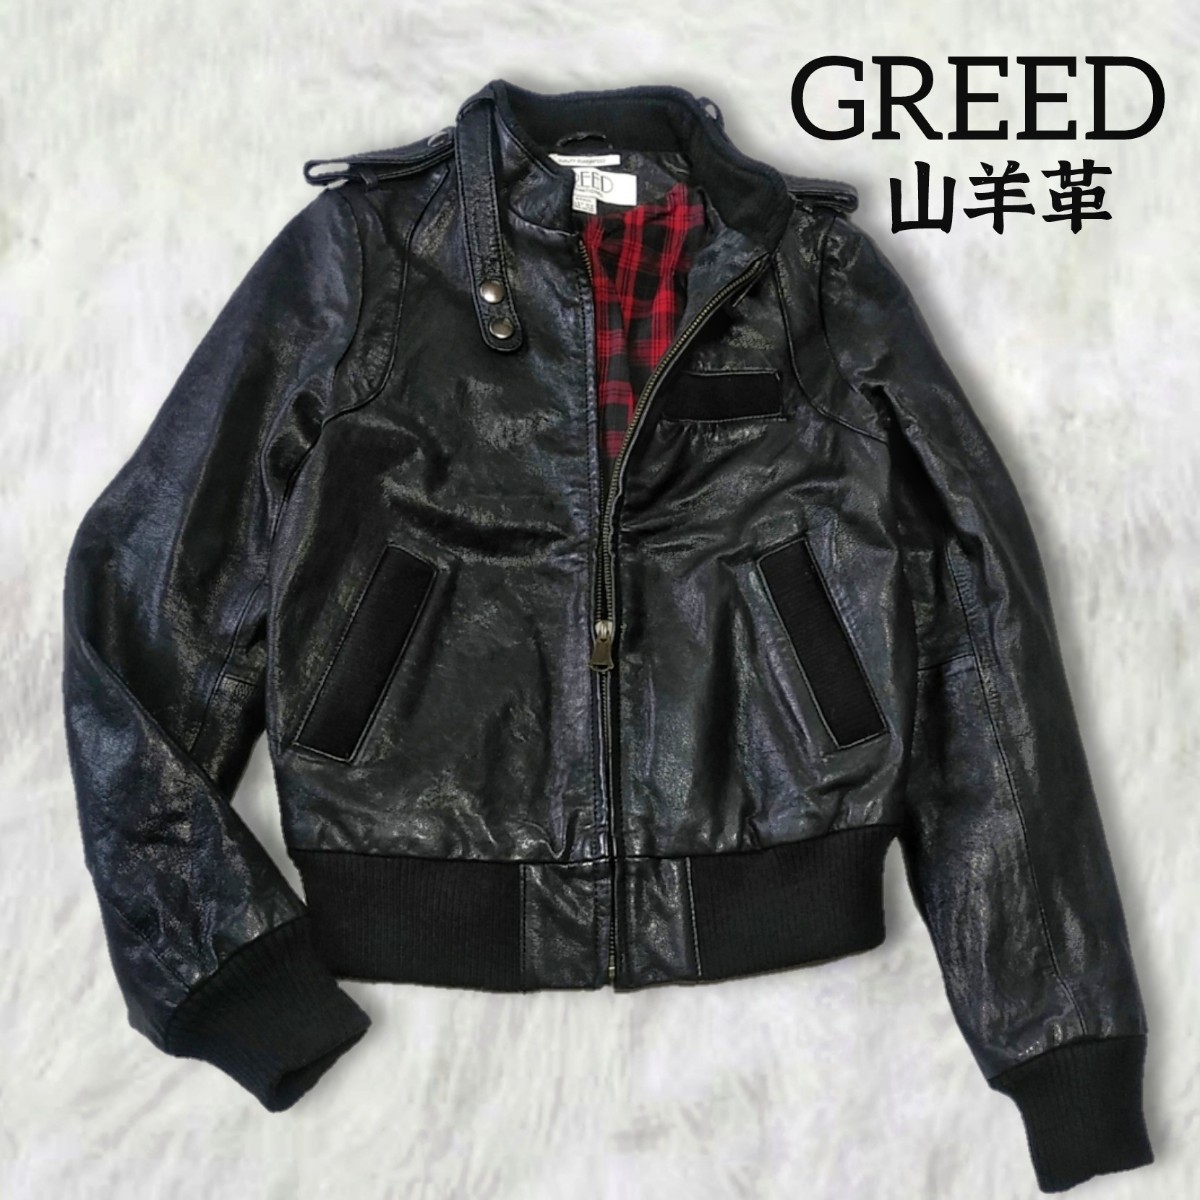 332 【GREED】 グリード 山羊革 レザー ジップアップ ブルゾン ライダースジャケット アウター Sサイズ 黒 ブラック ゴートレザー 本革